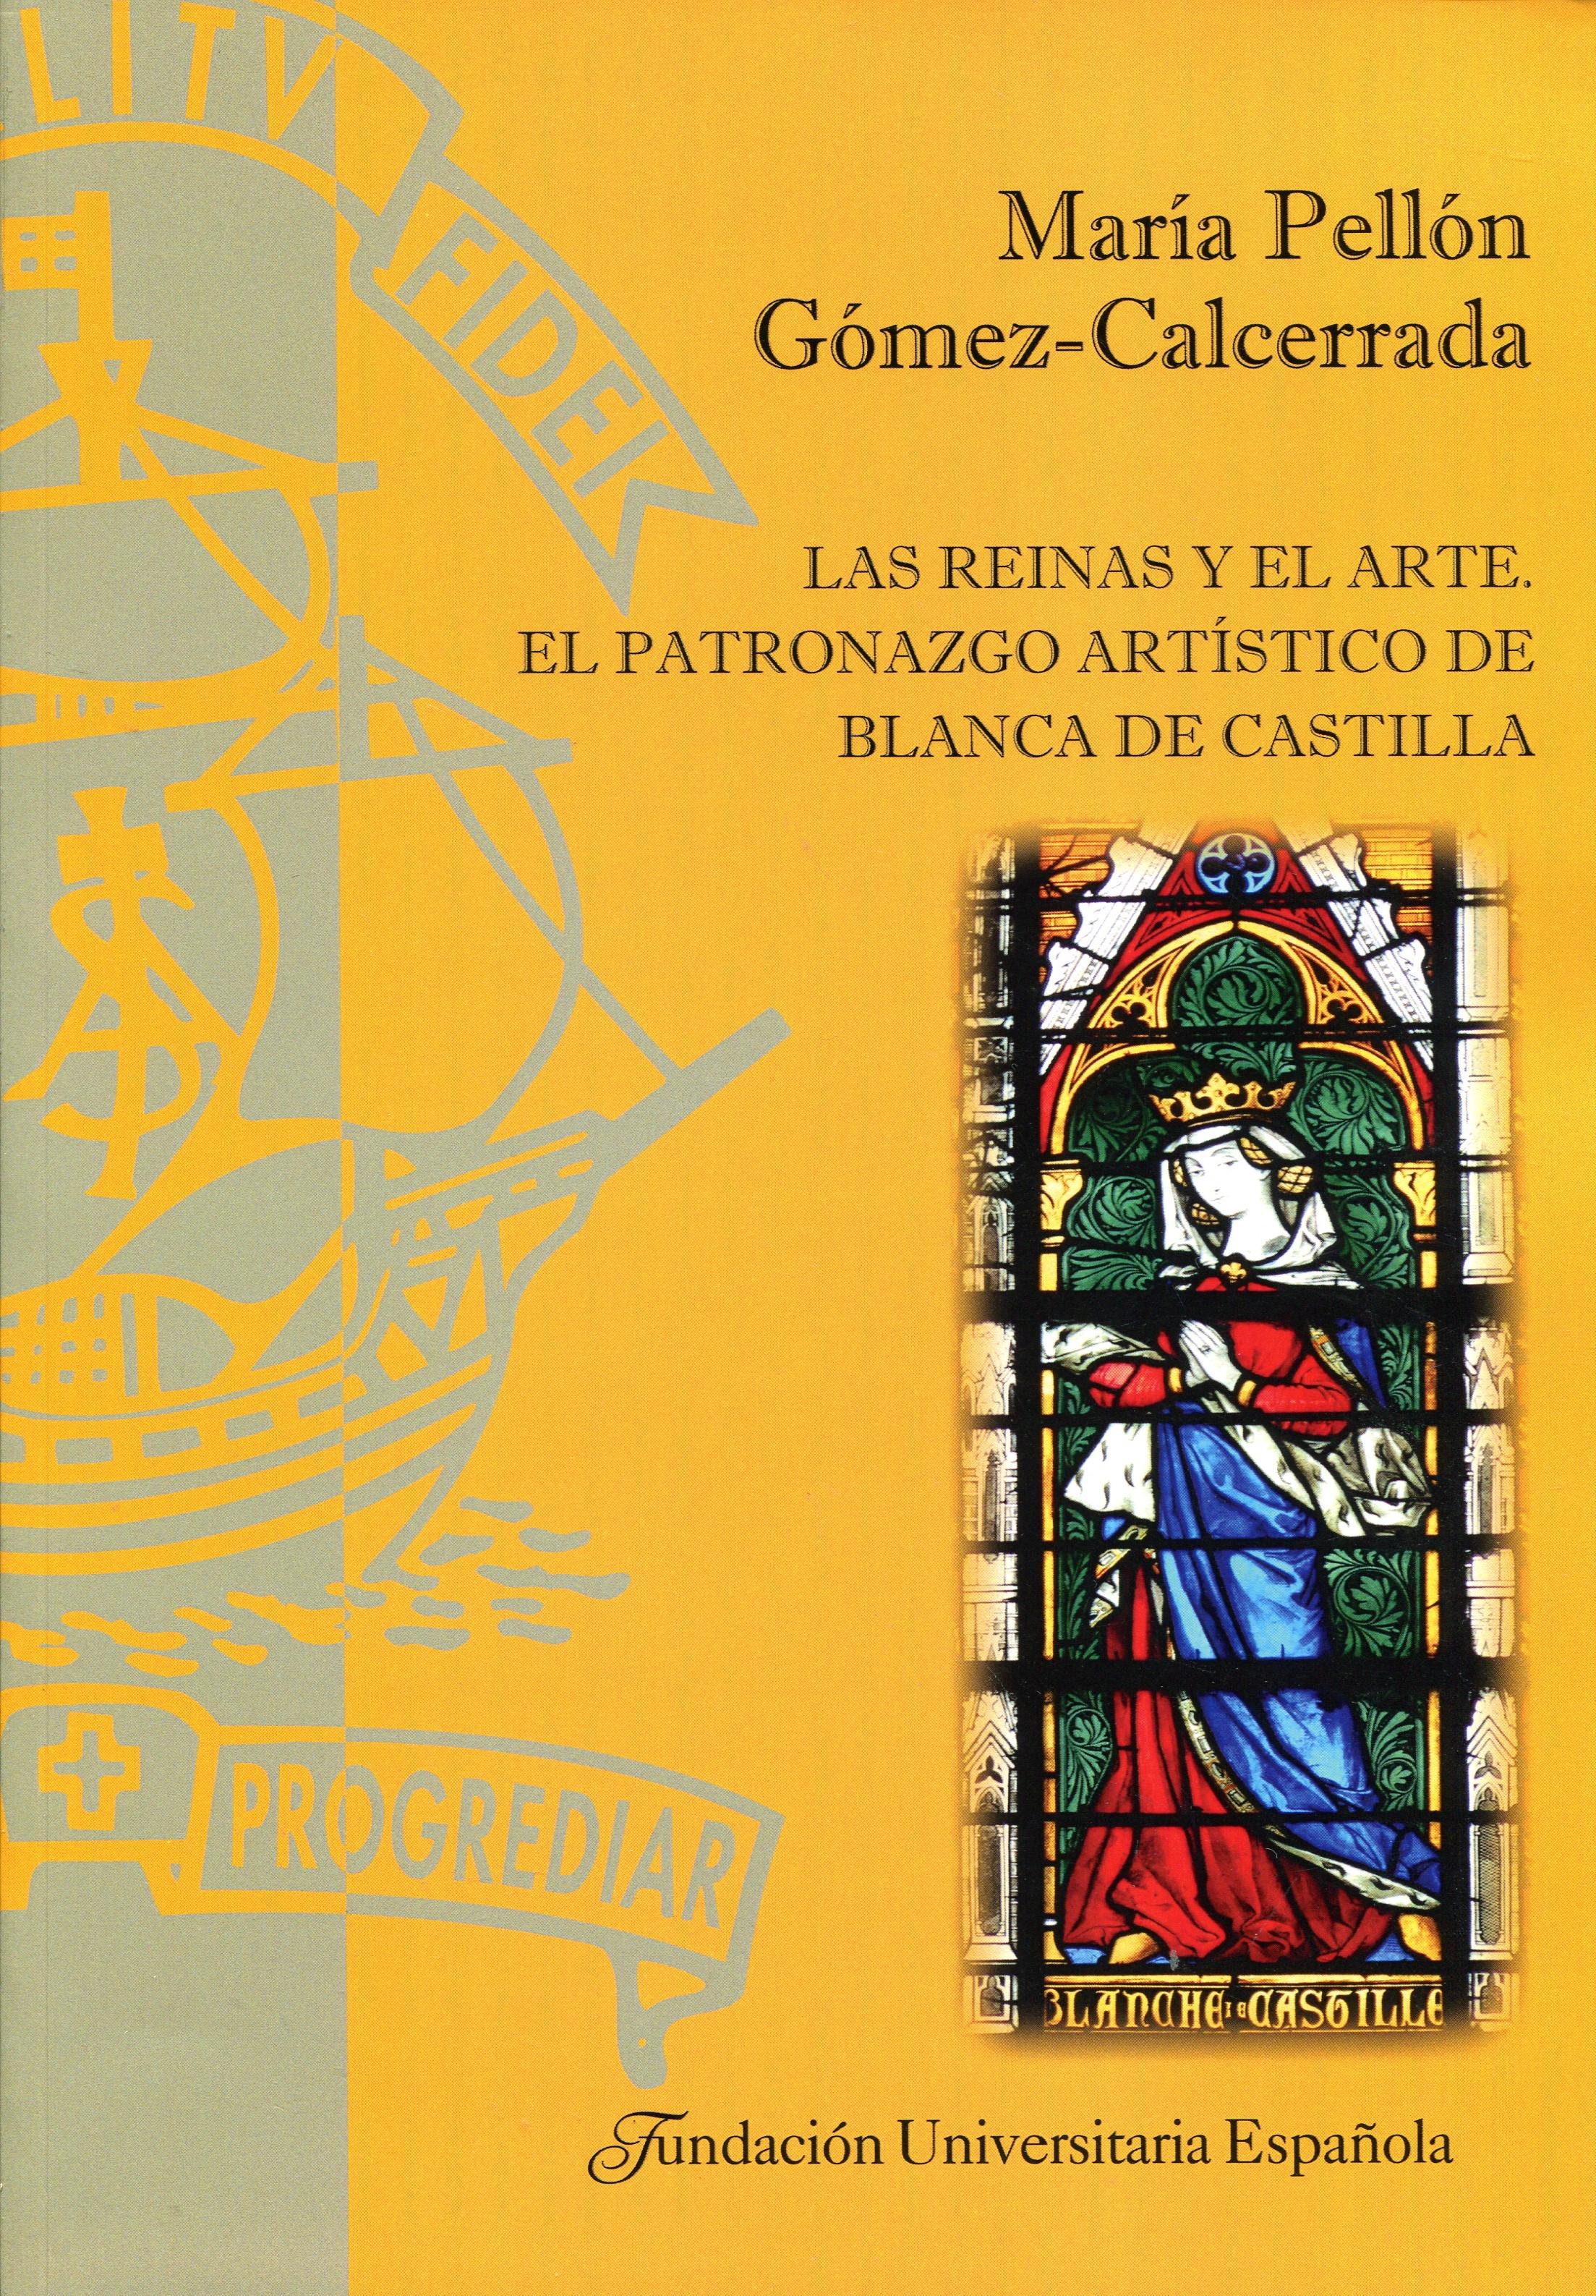 Las reinas y el arte "El patronazgo artístico de Blanca de Castilla"